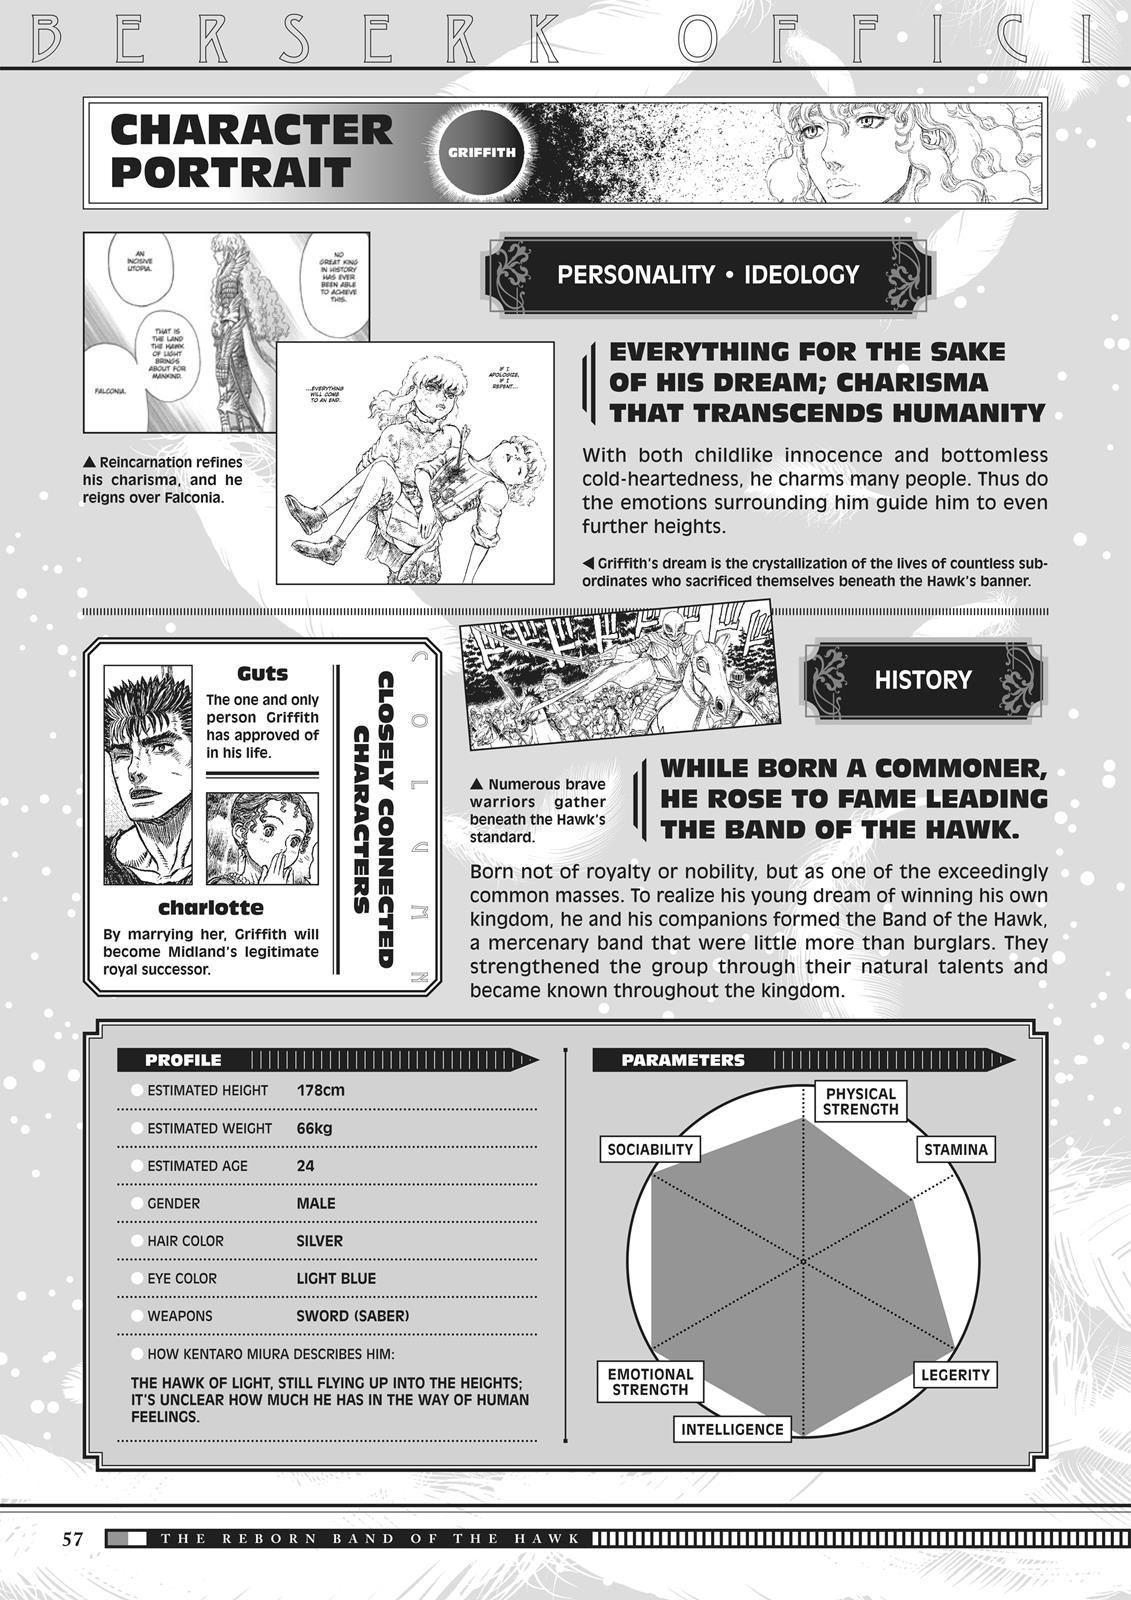 Berserk Manga Chapter 350.5 image 056